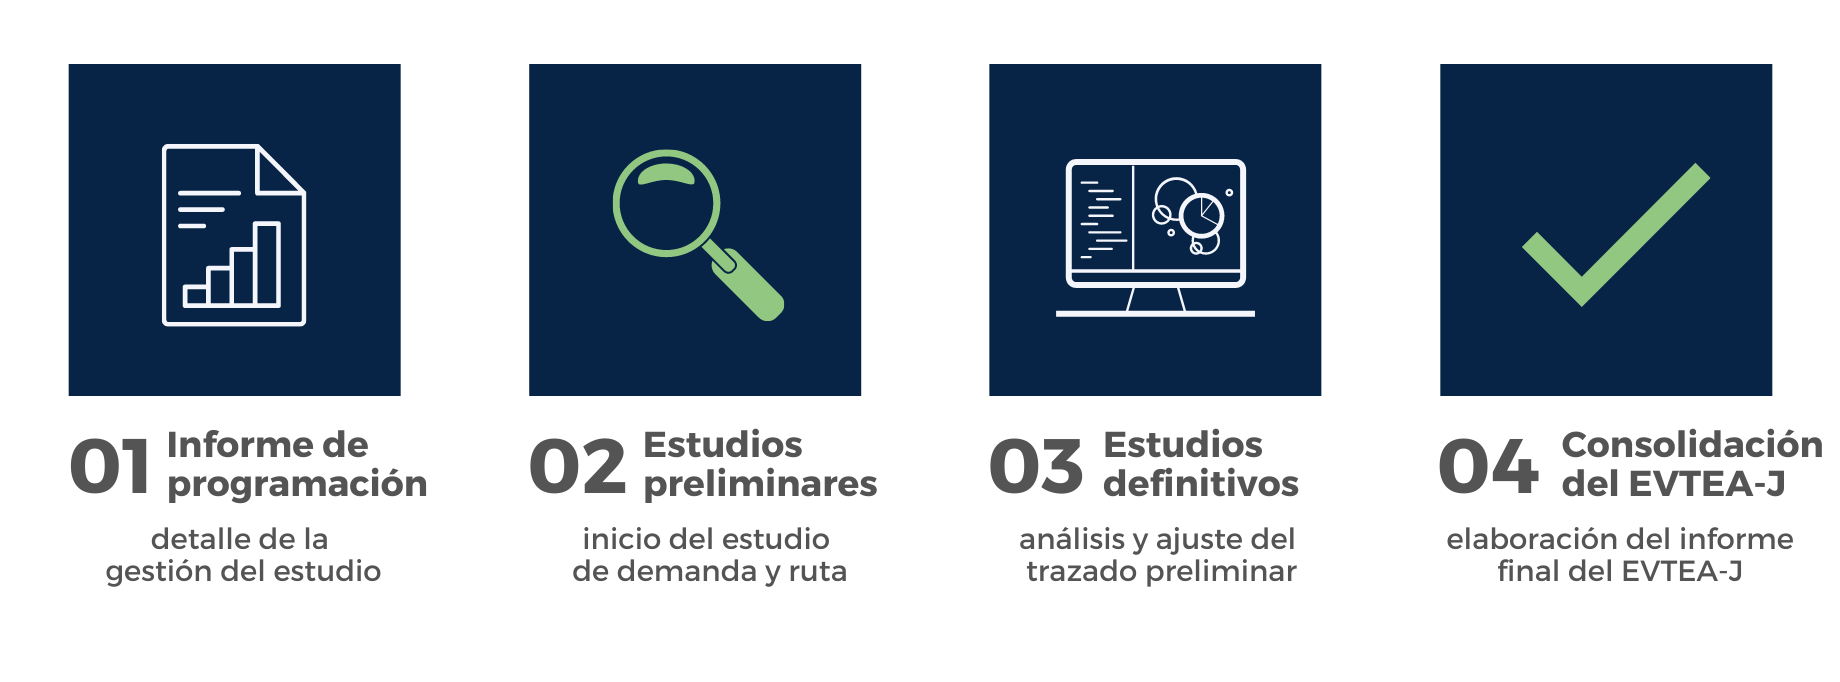 Imagem das quatros fases do Evtea-j em espanhol